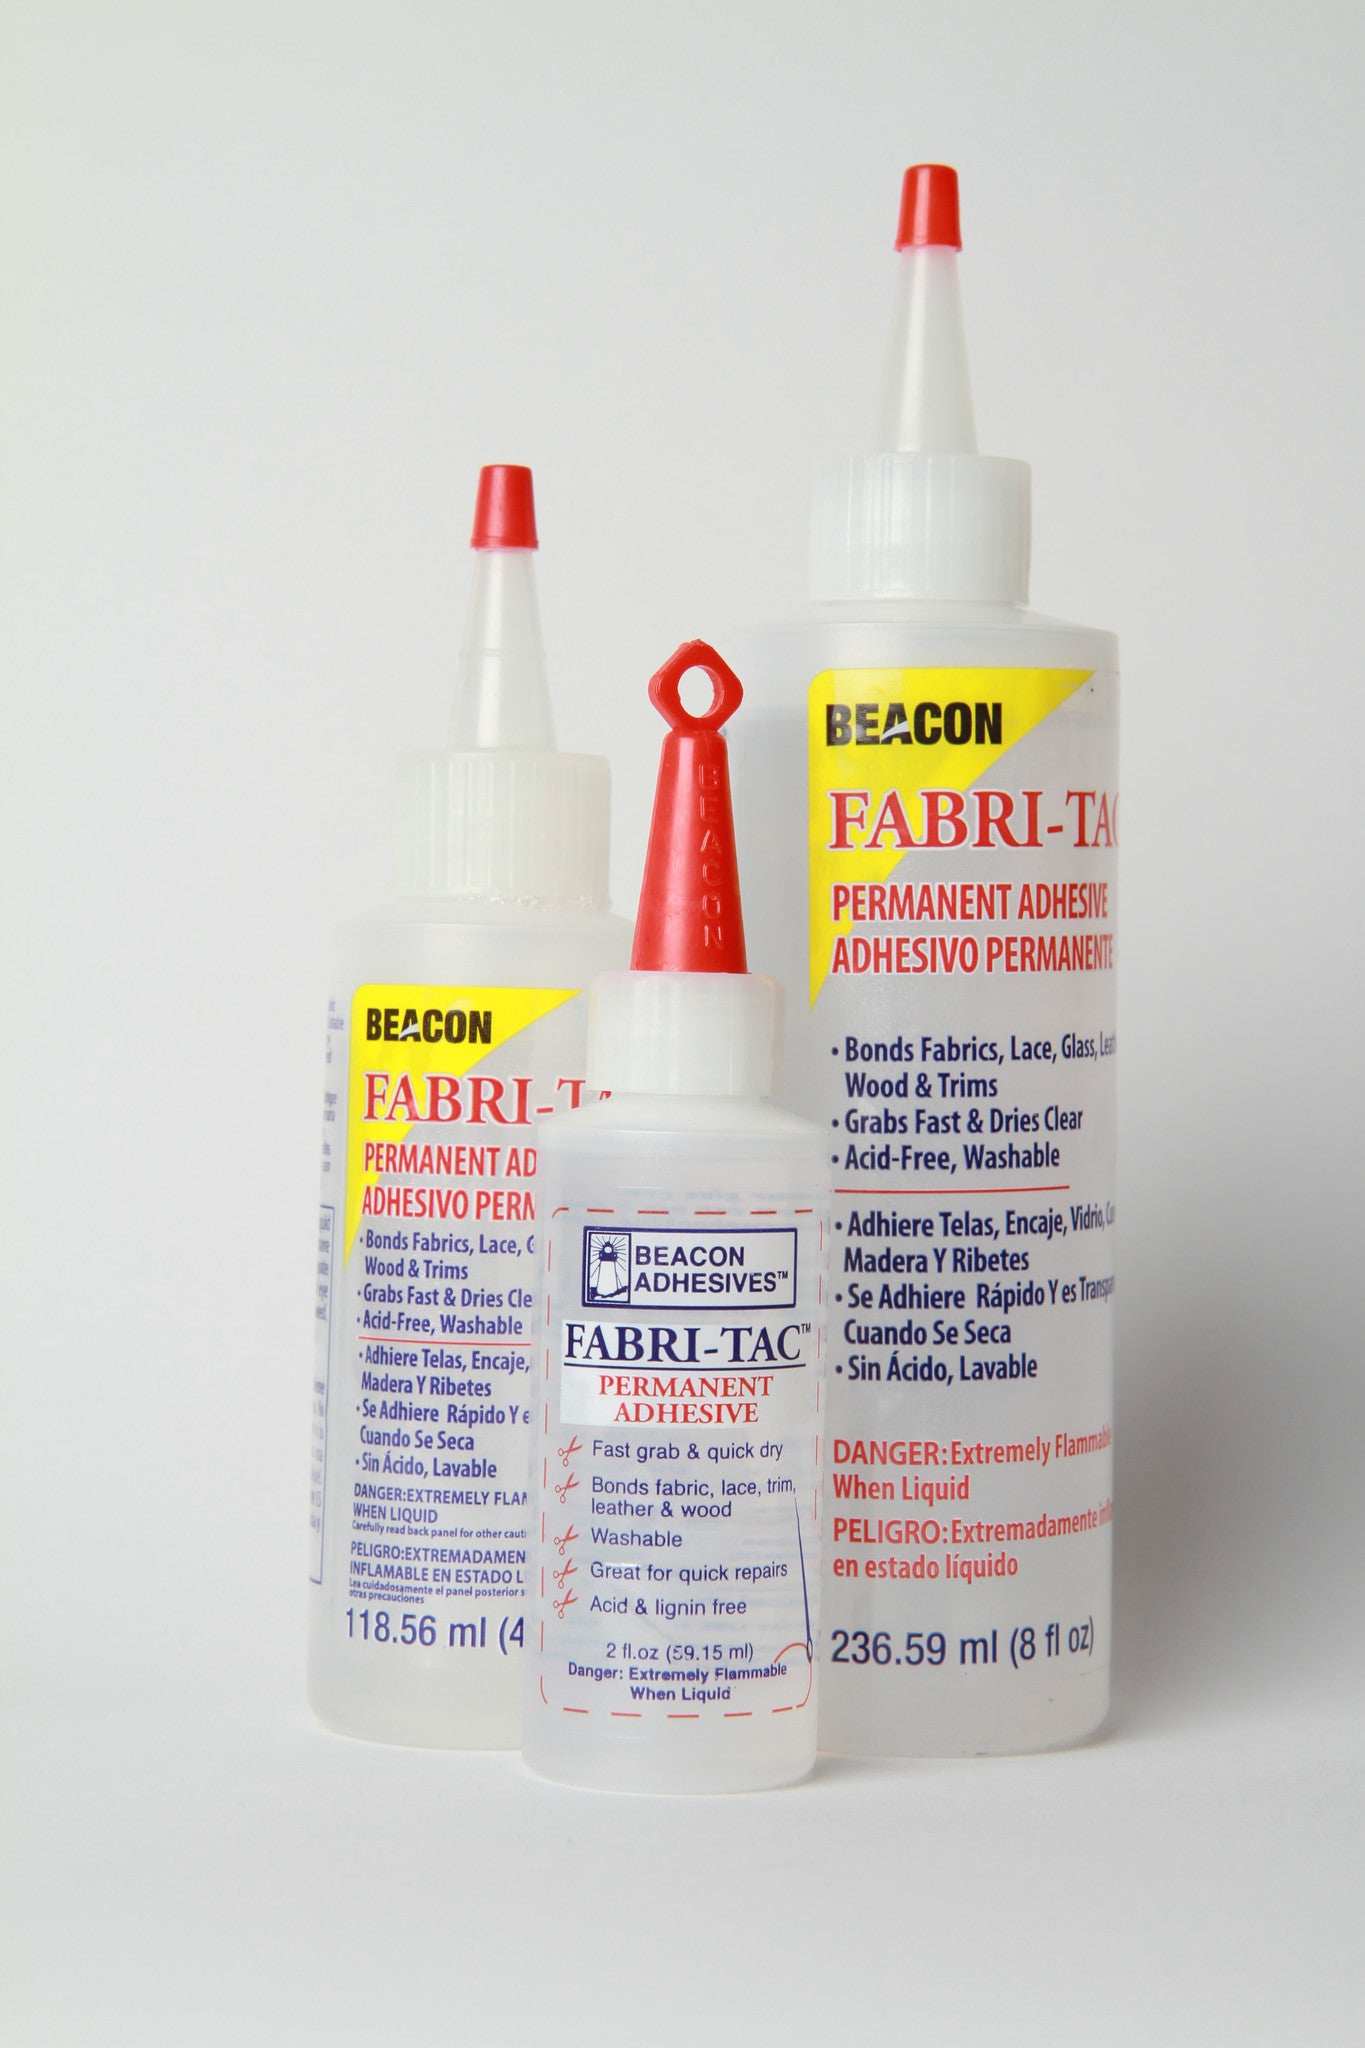 Fabri-Tac Glue  ABC Sewing Machine